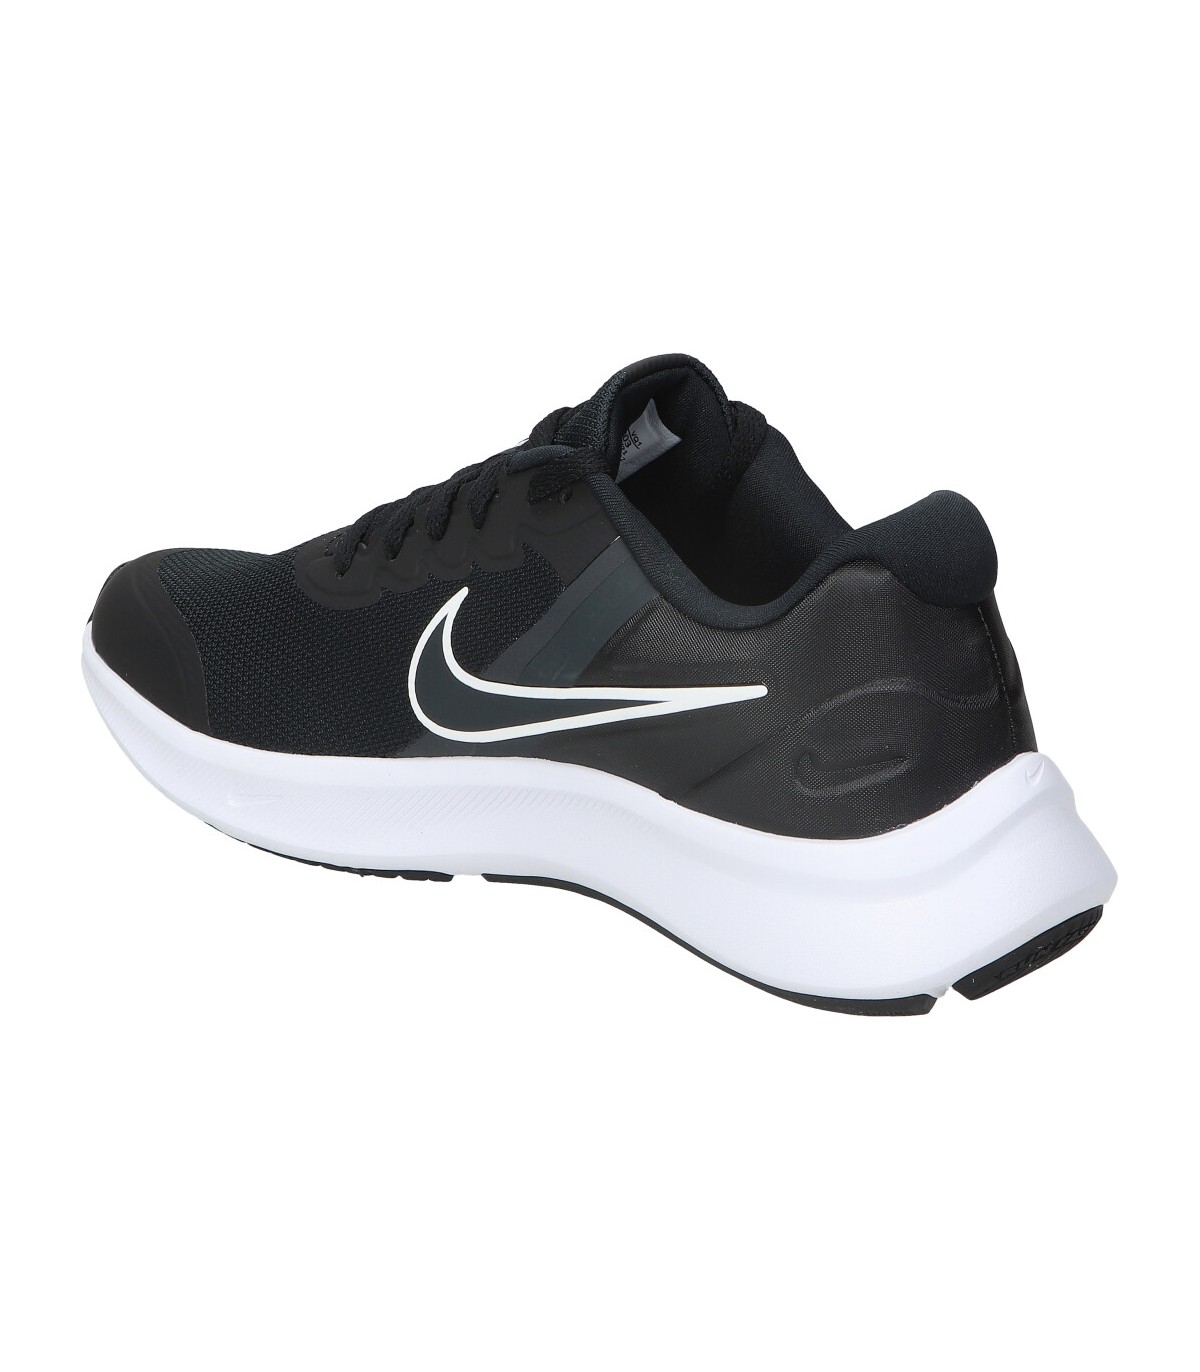 Zapatillas negras Nike Runner 3. MEGACALZADO